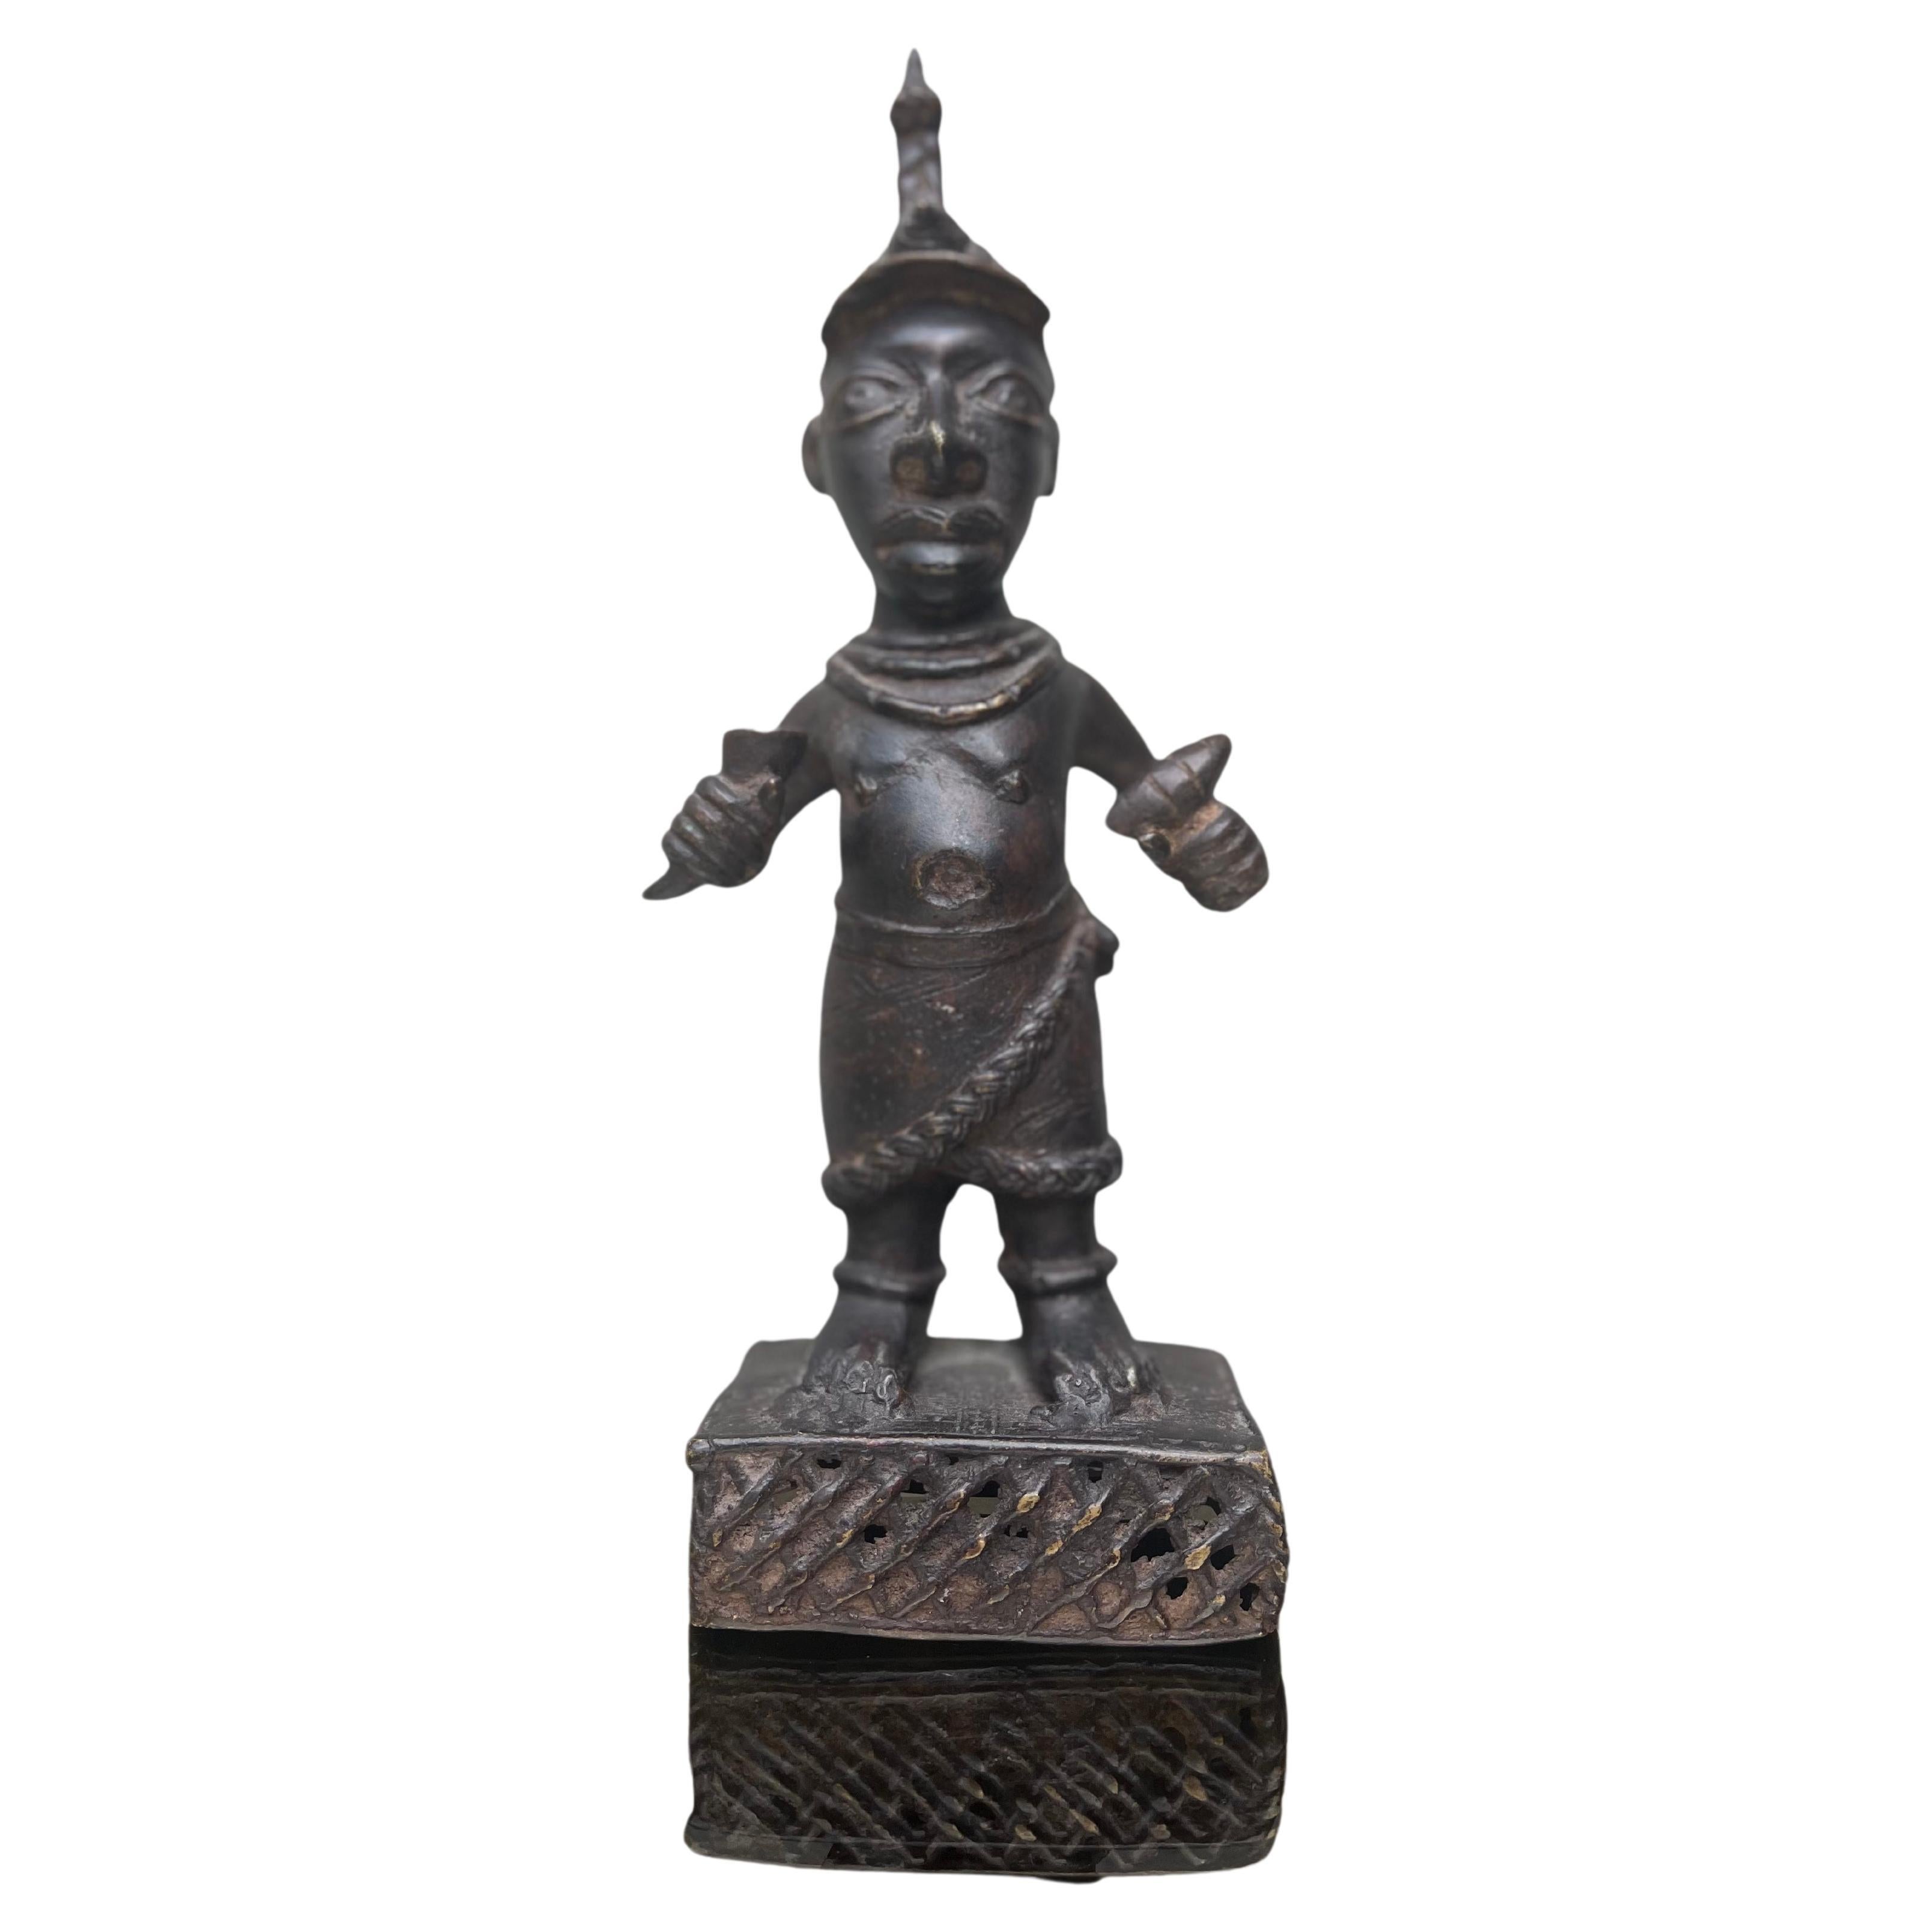 Antike Bildhauerei - Bronze - Afrika - Benin - XIX secolo -Skulptur - Afrika 